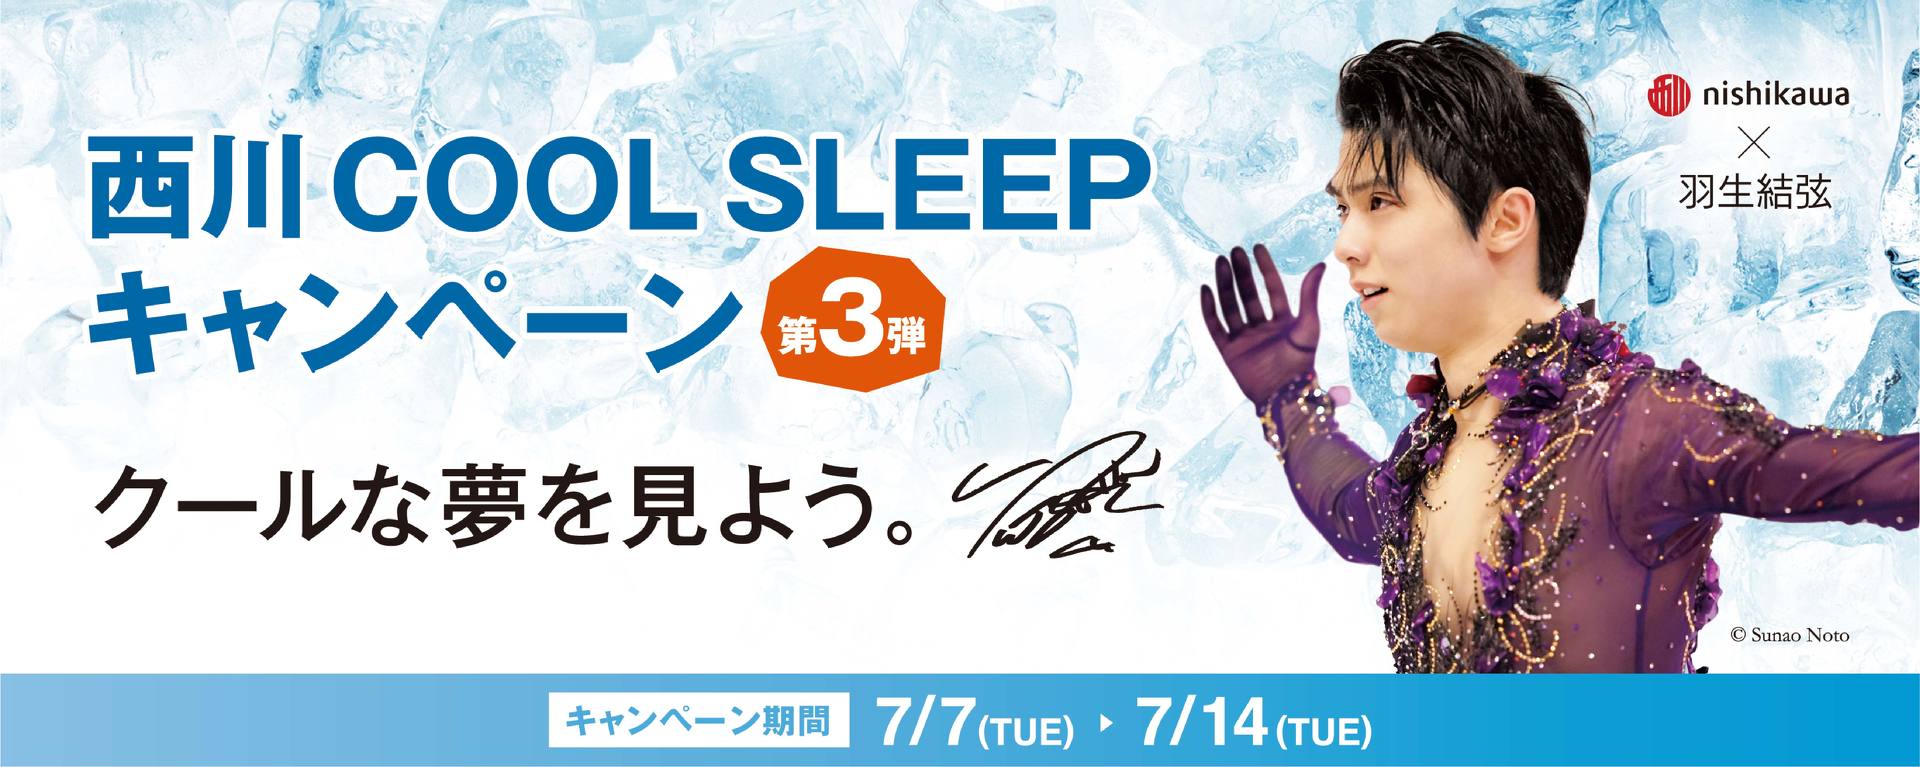 西川、夏季の「COOL SLEEP キャンペーン」に羽生結弦選手を起用　ノベルティは配布終了